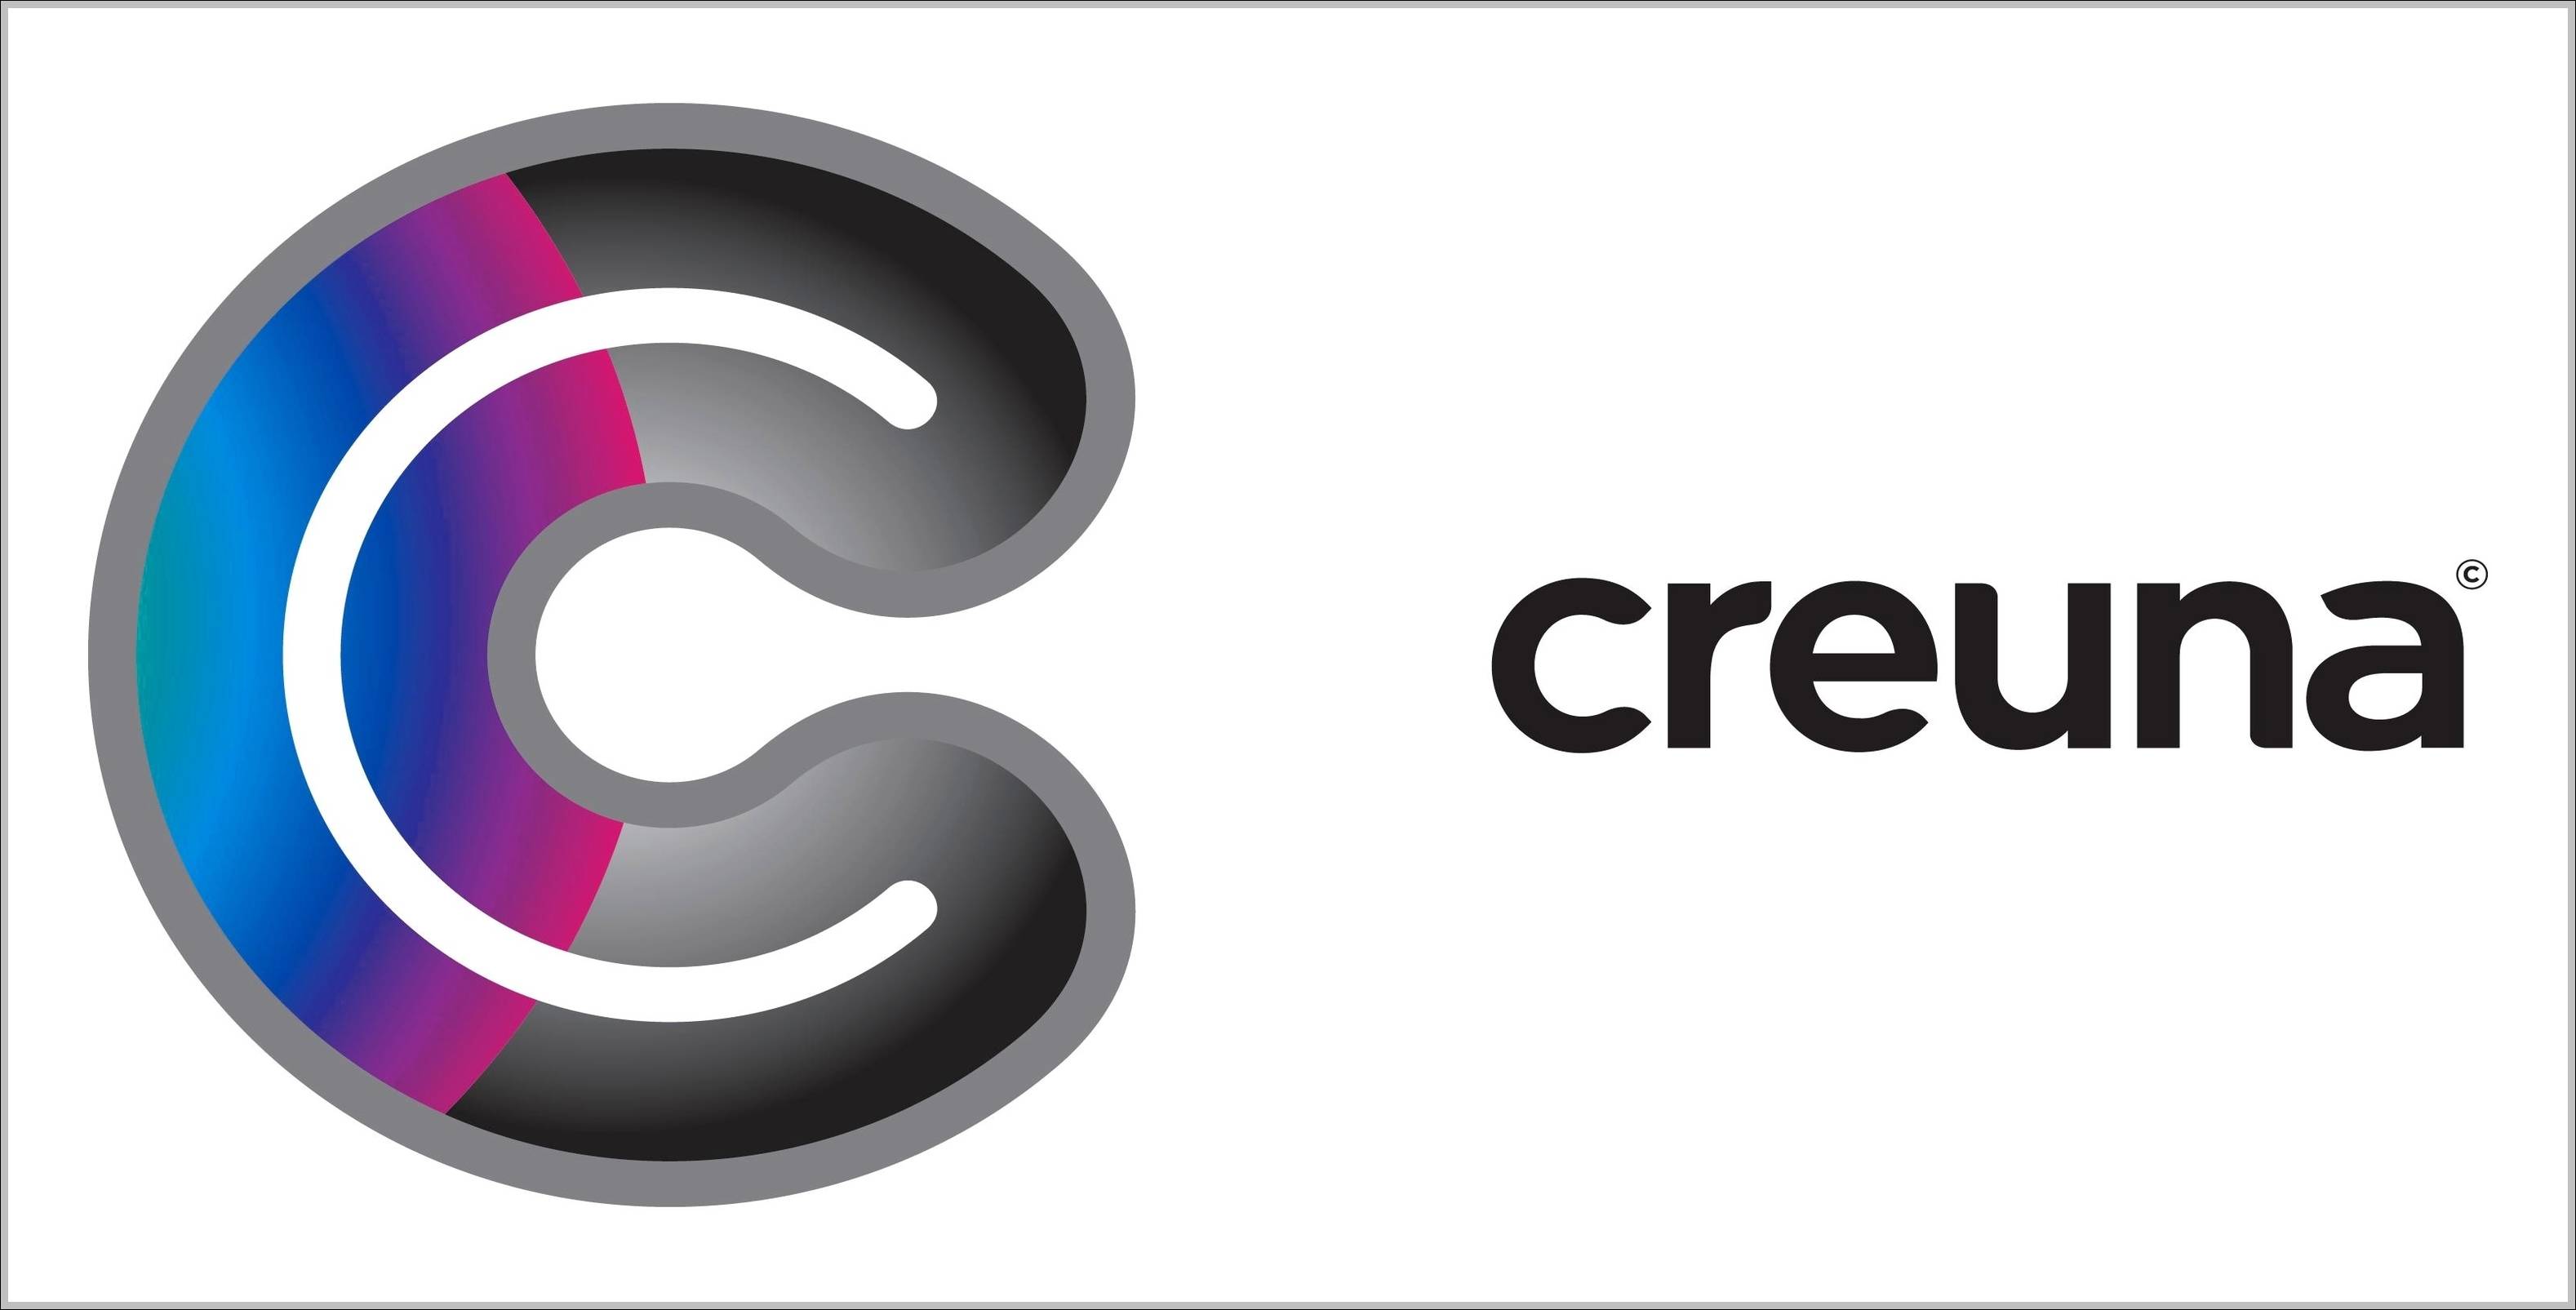 Creuna logo and sign